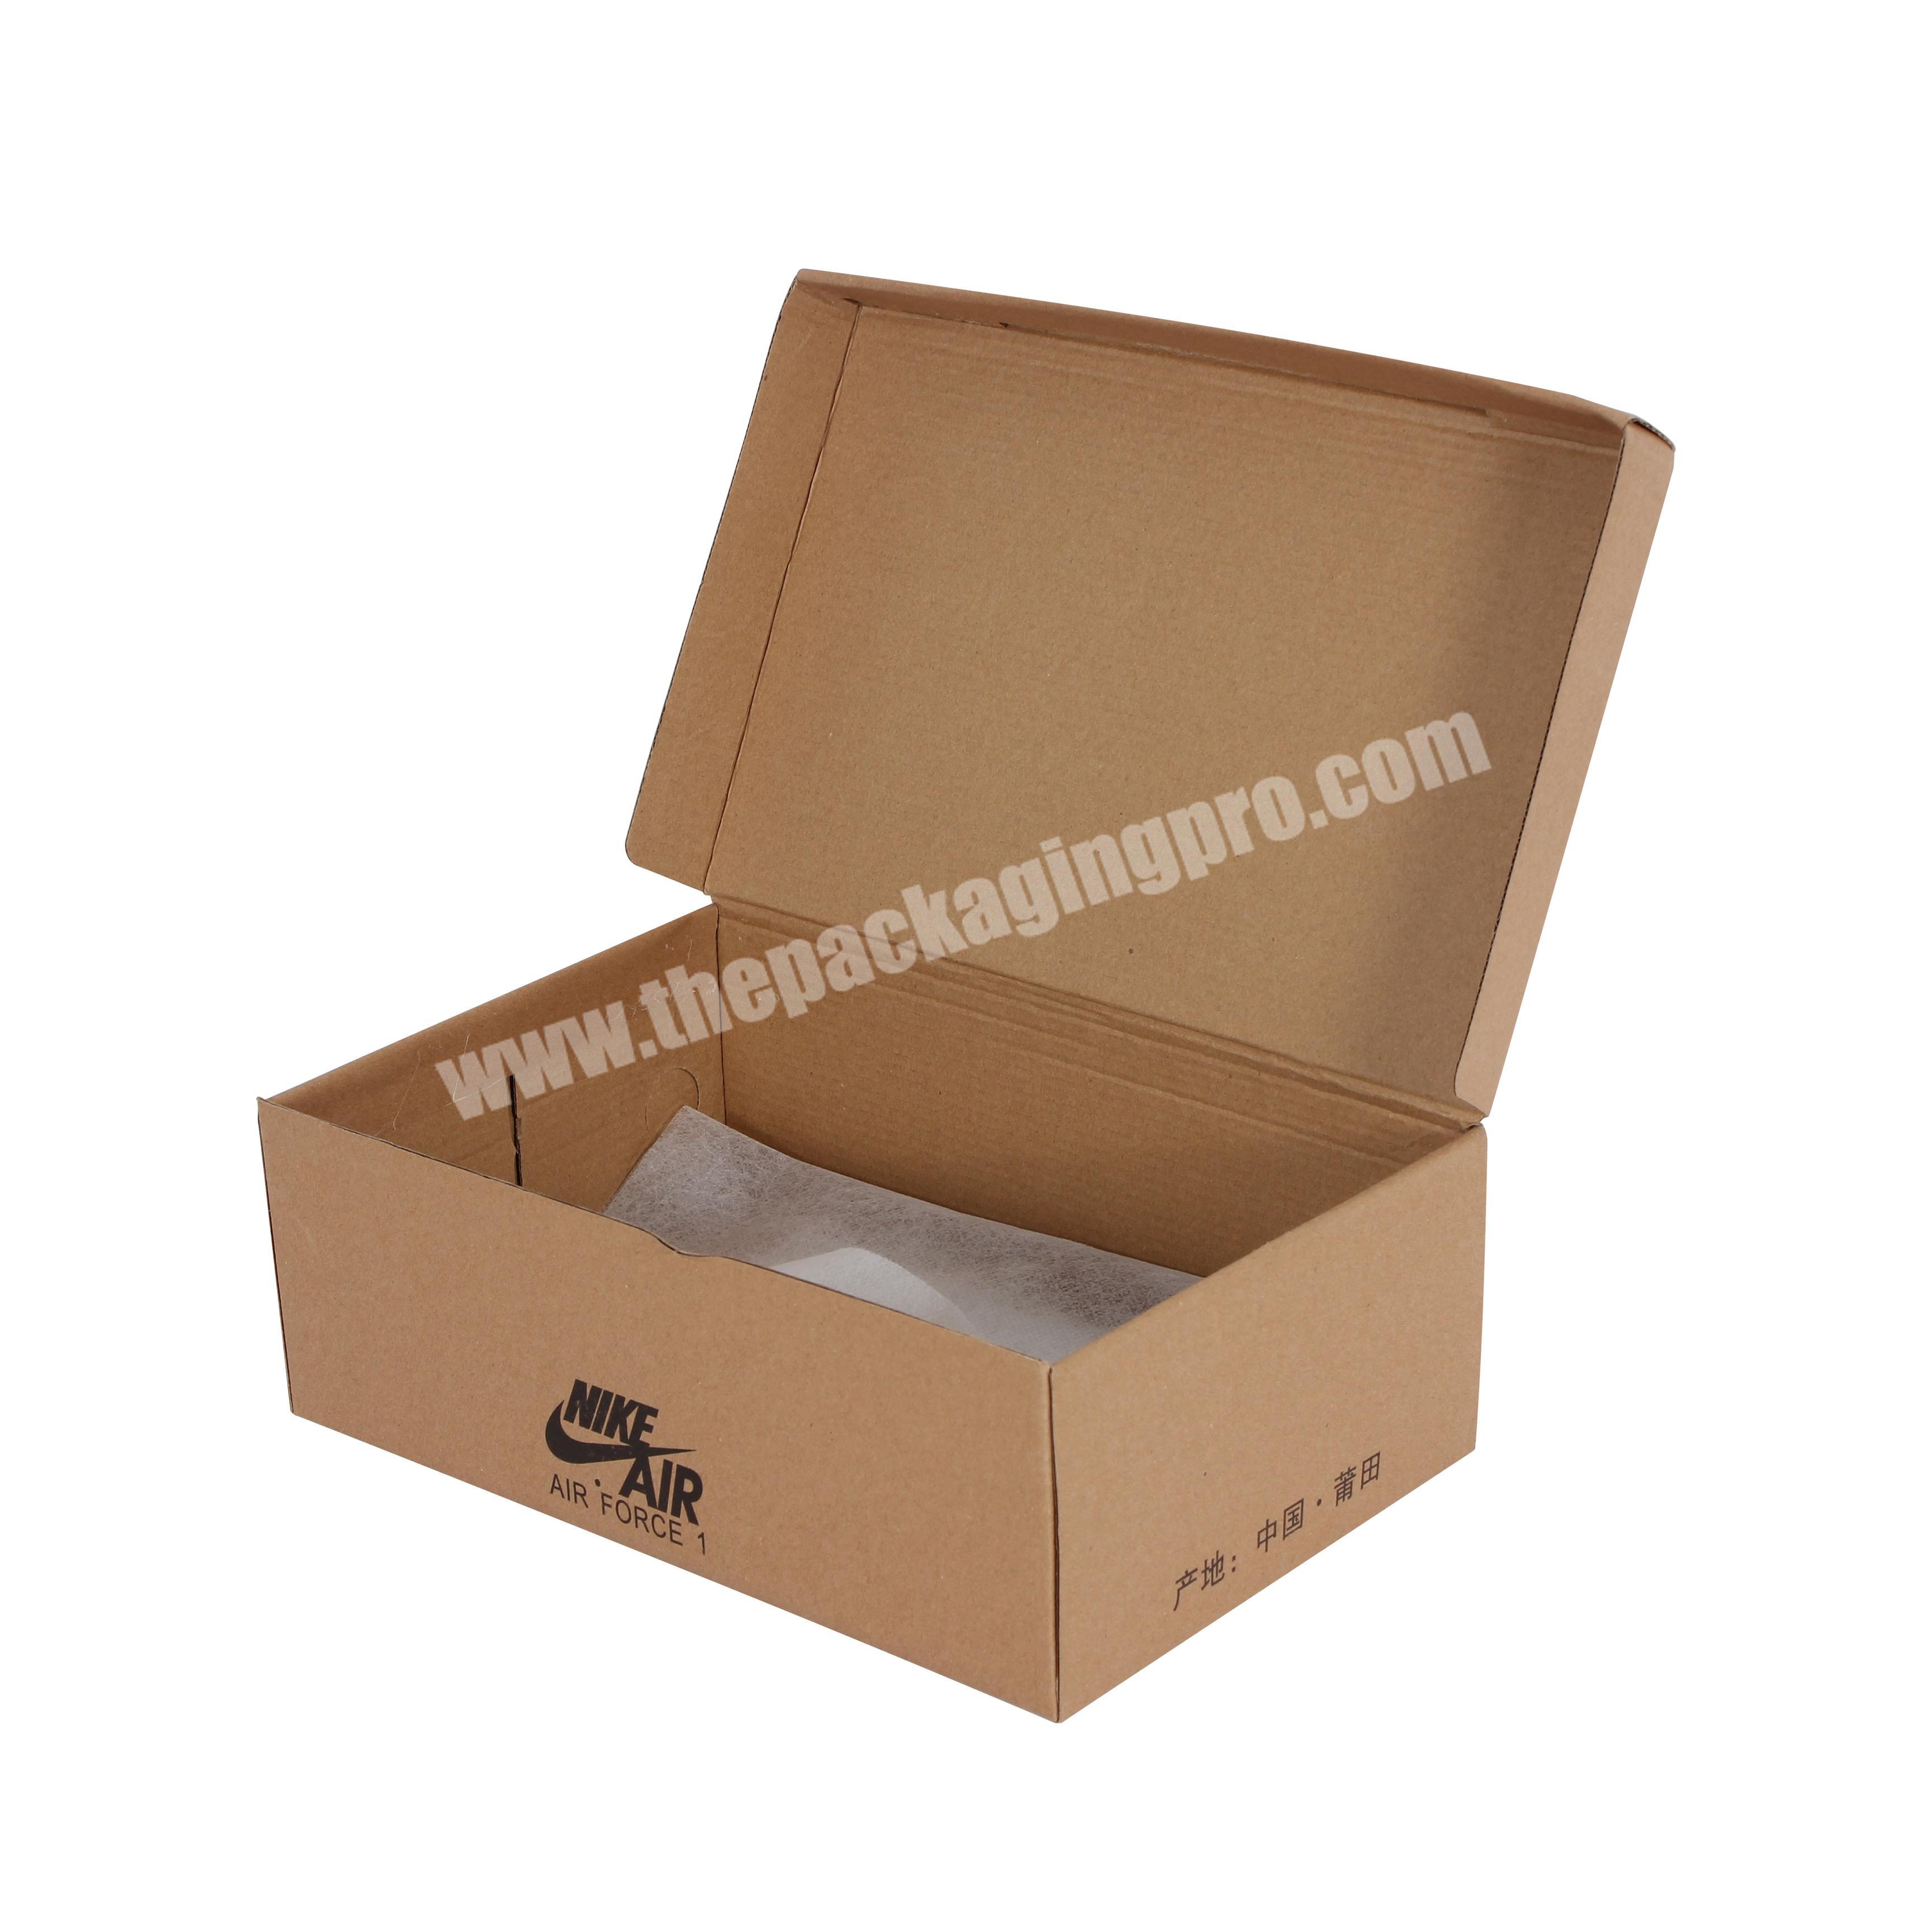 Yongjin Yongjin Wholesale Luxury Empty Product Package Cardboard Sneaker Shoe Box With Custom Logo For Gift Packaging